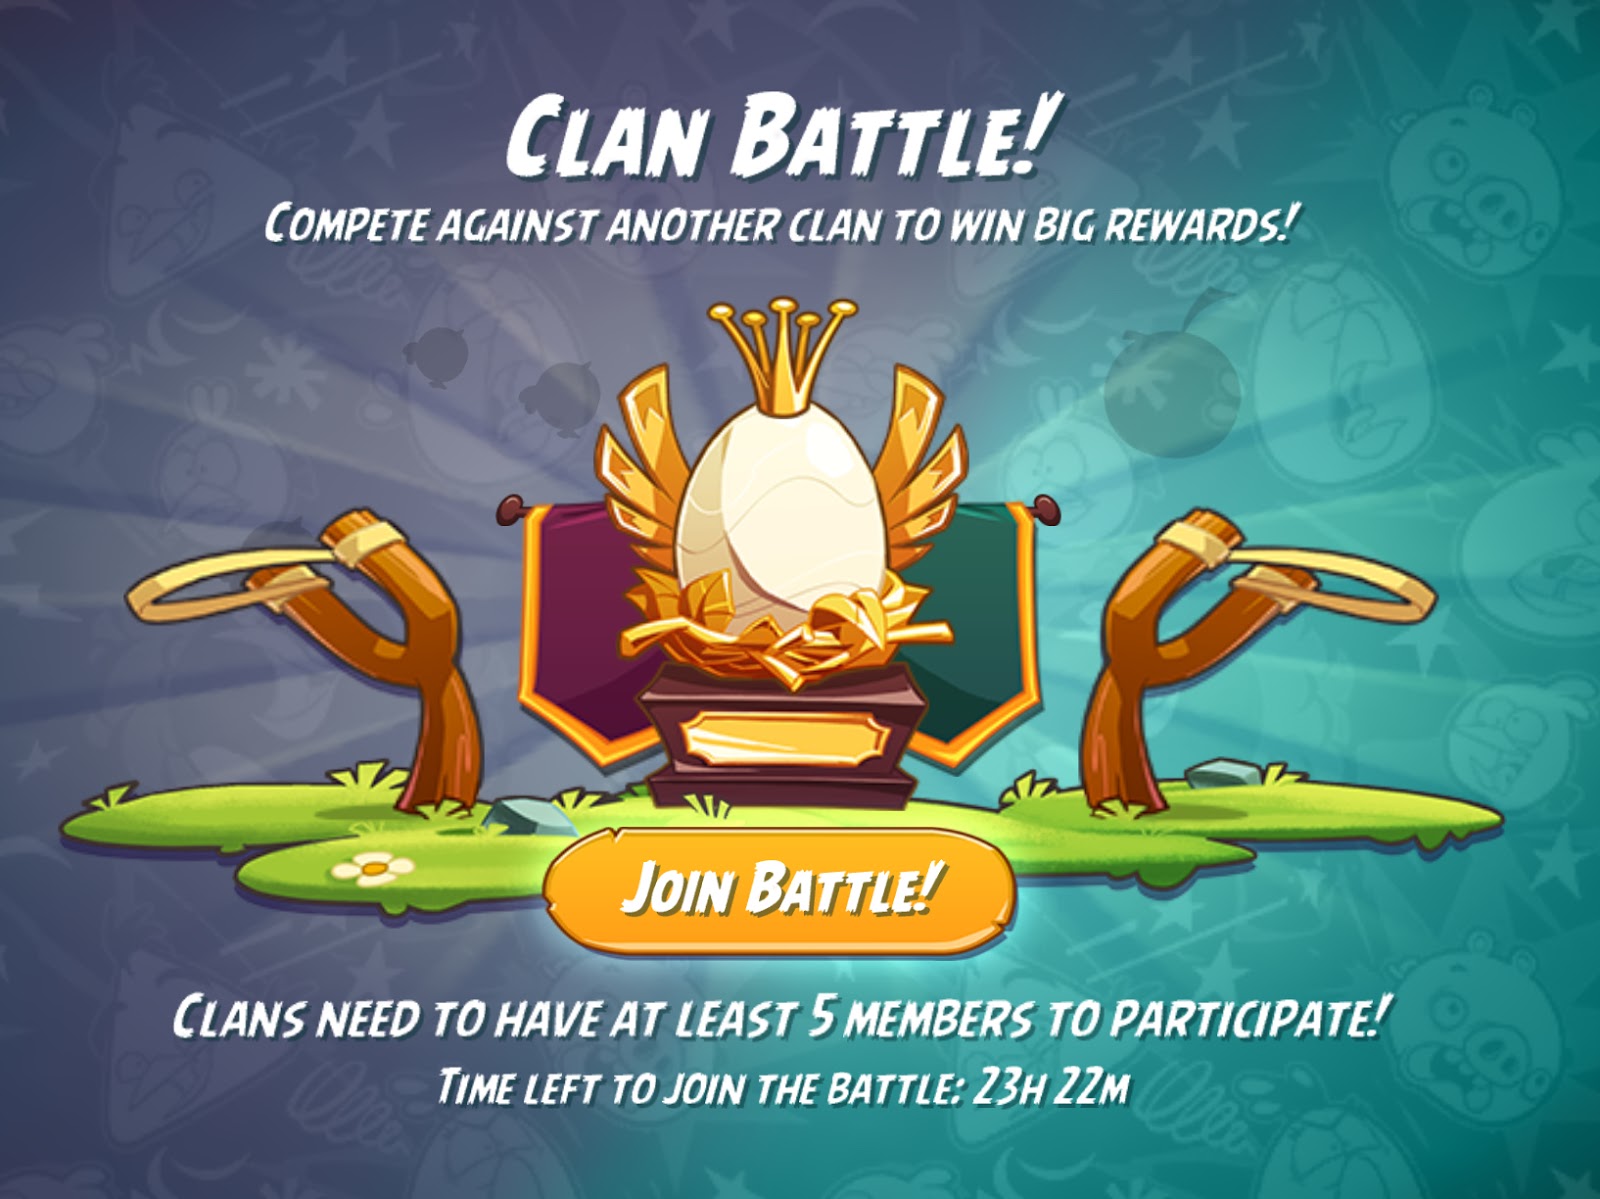 Clan battles